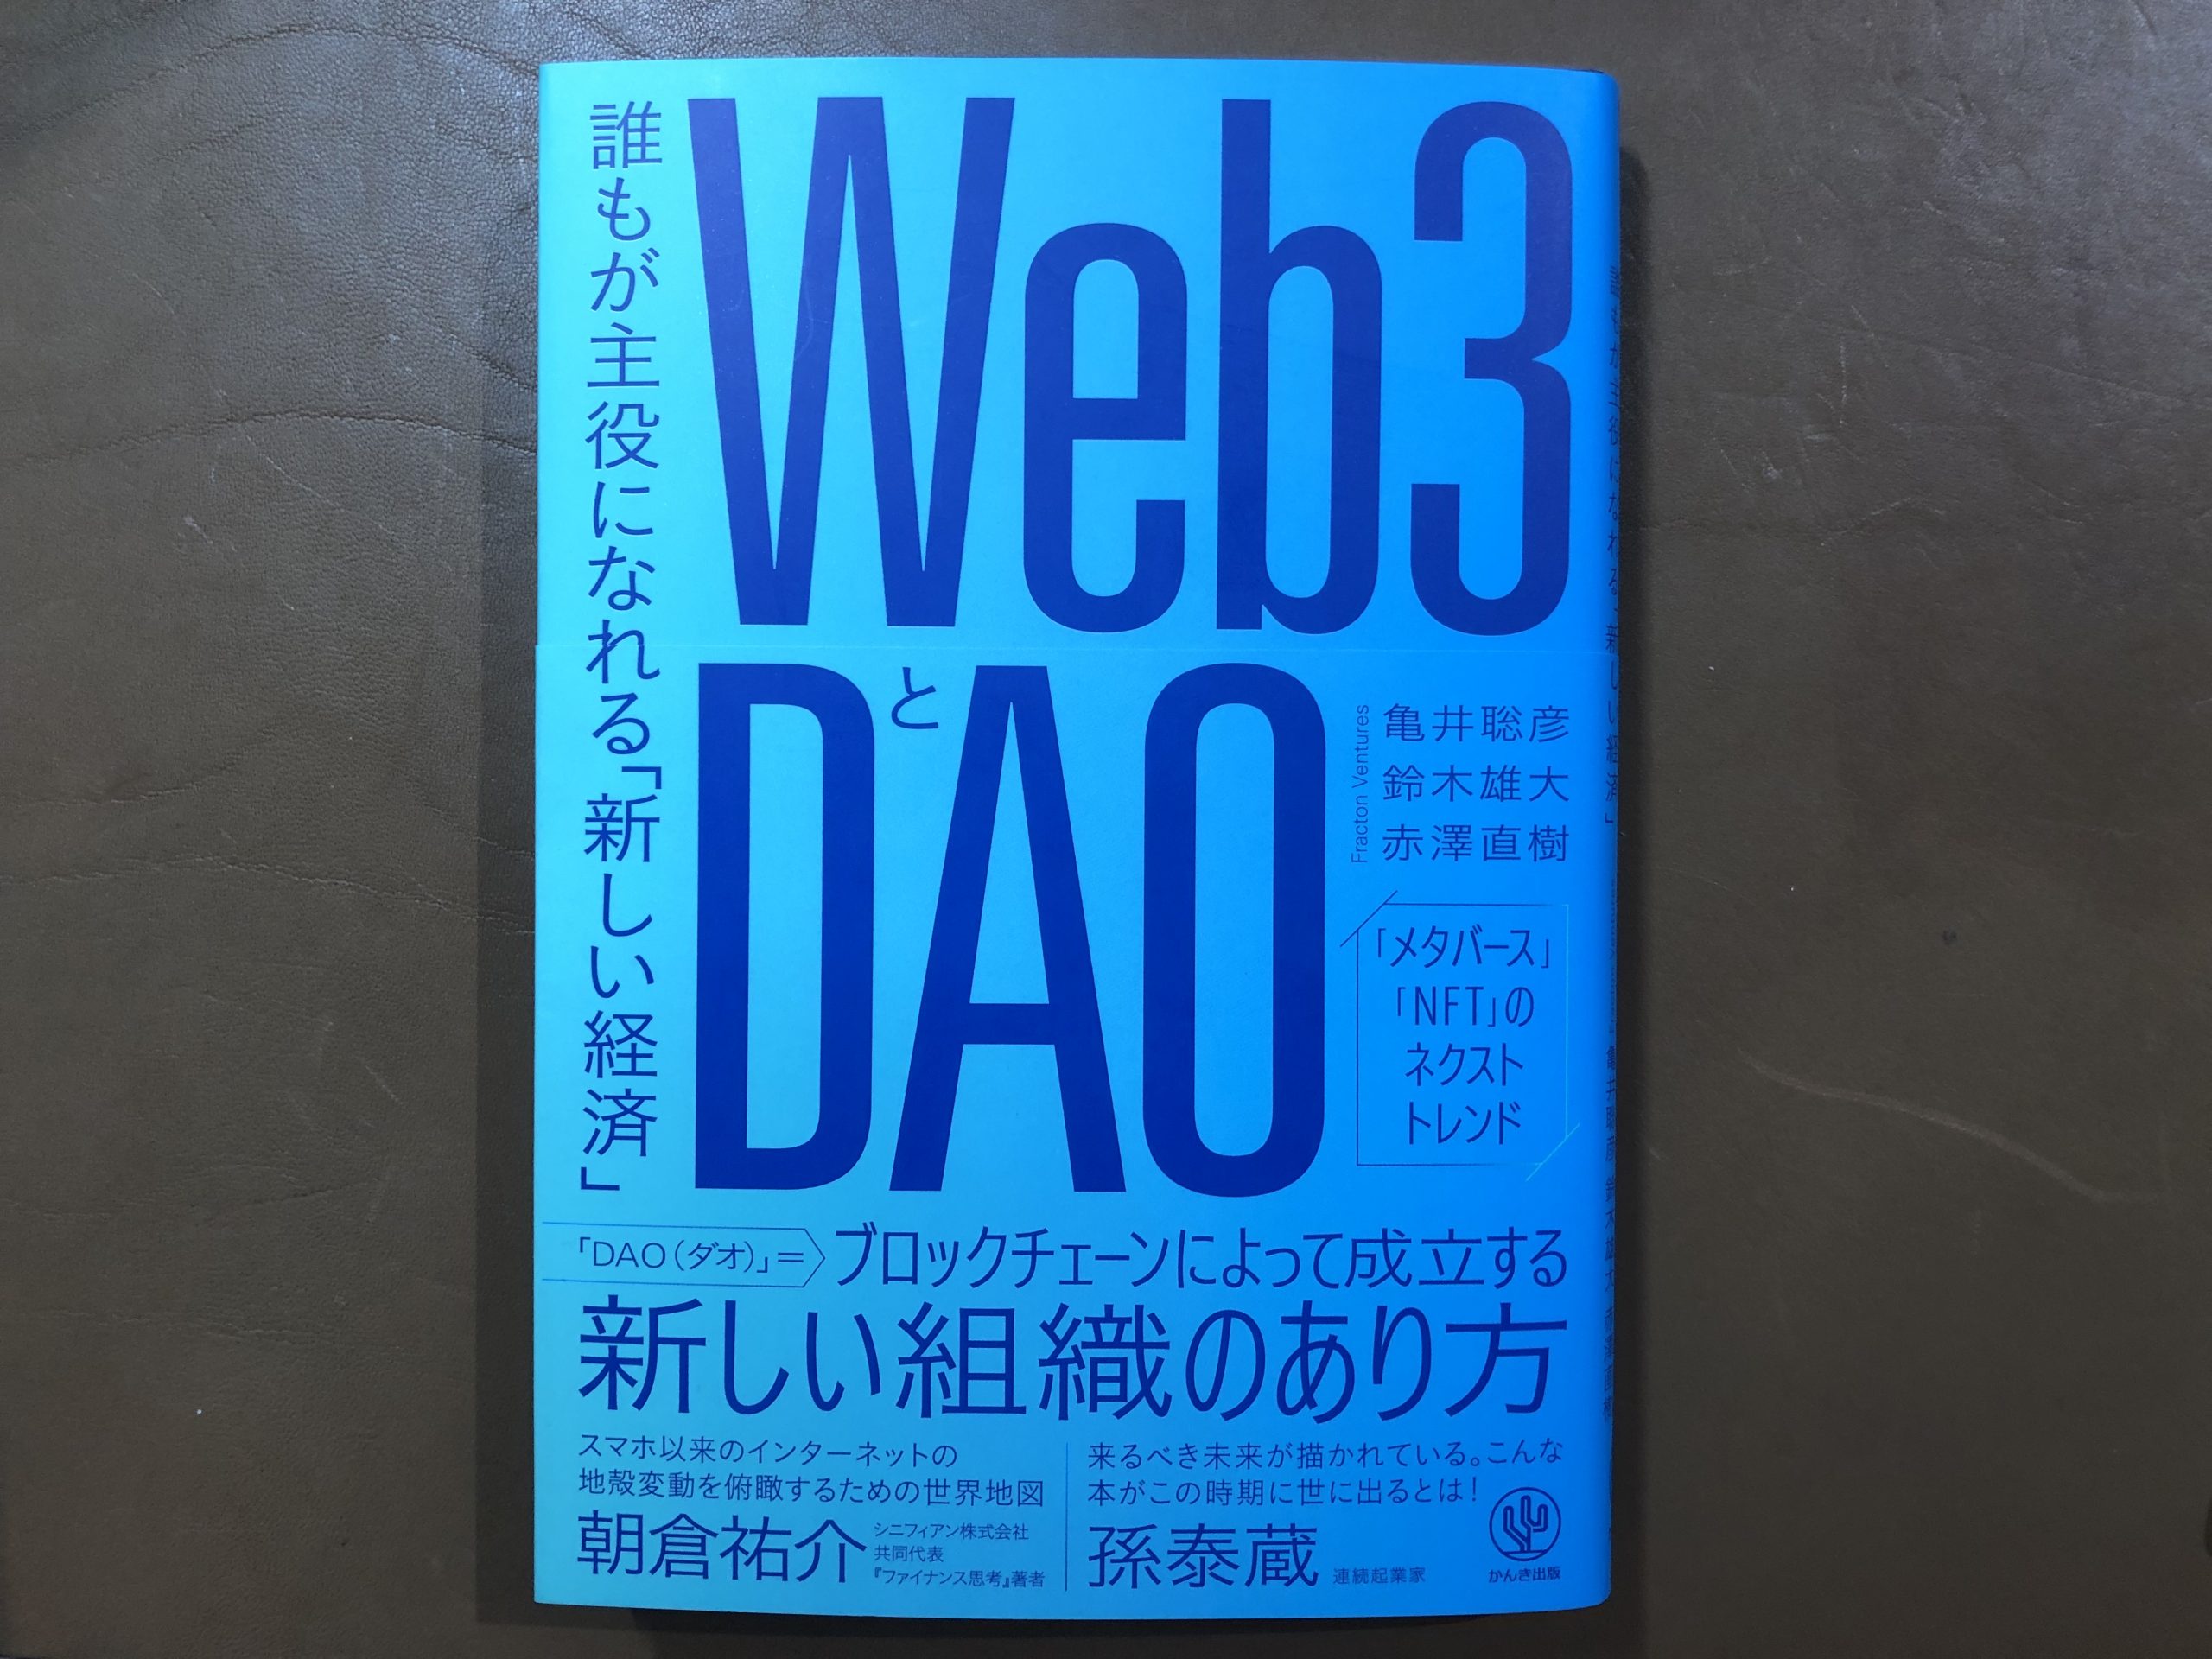 【Web3とDAO】ただのブーム・バズワードか？新しい経済か？